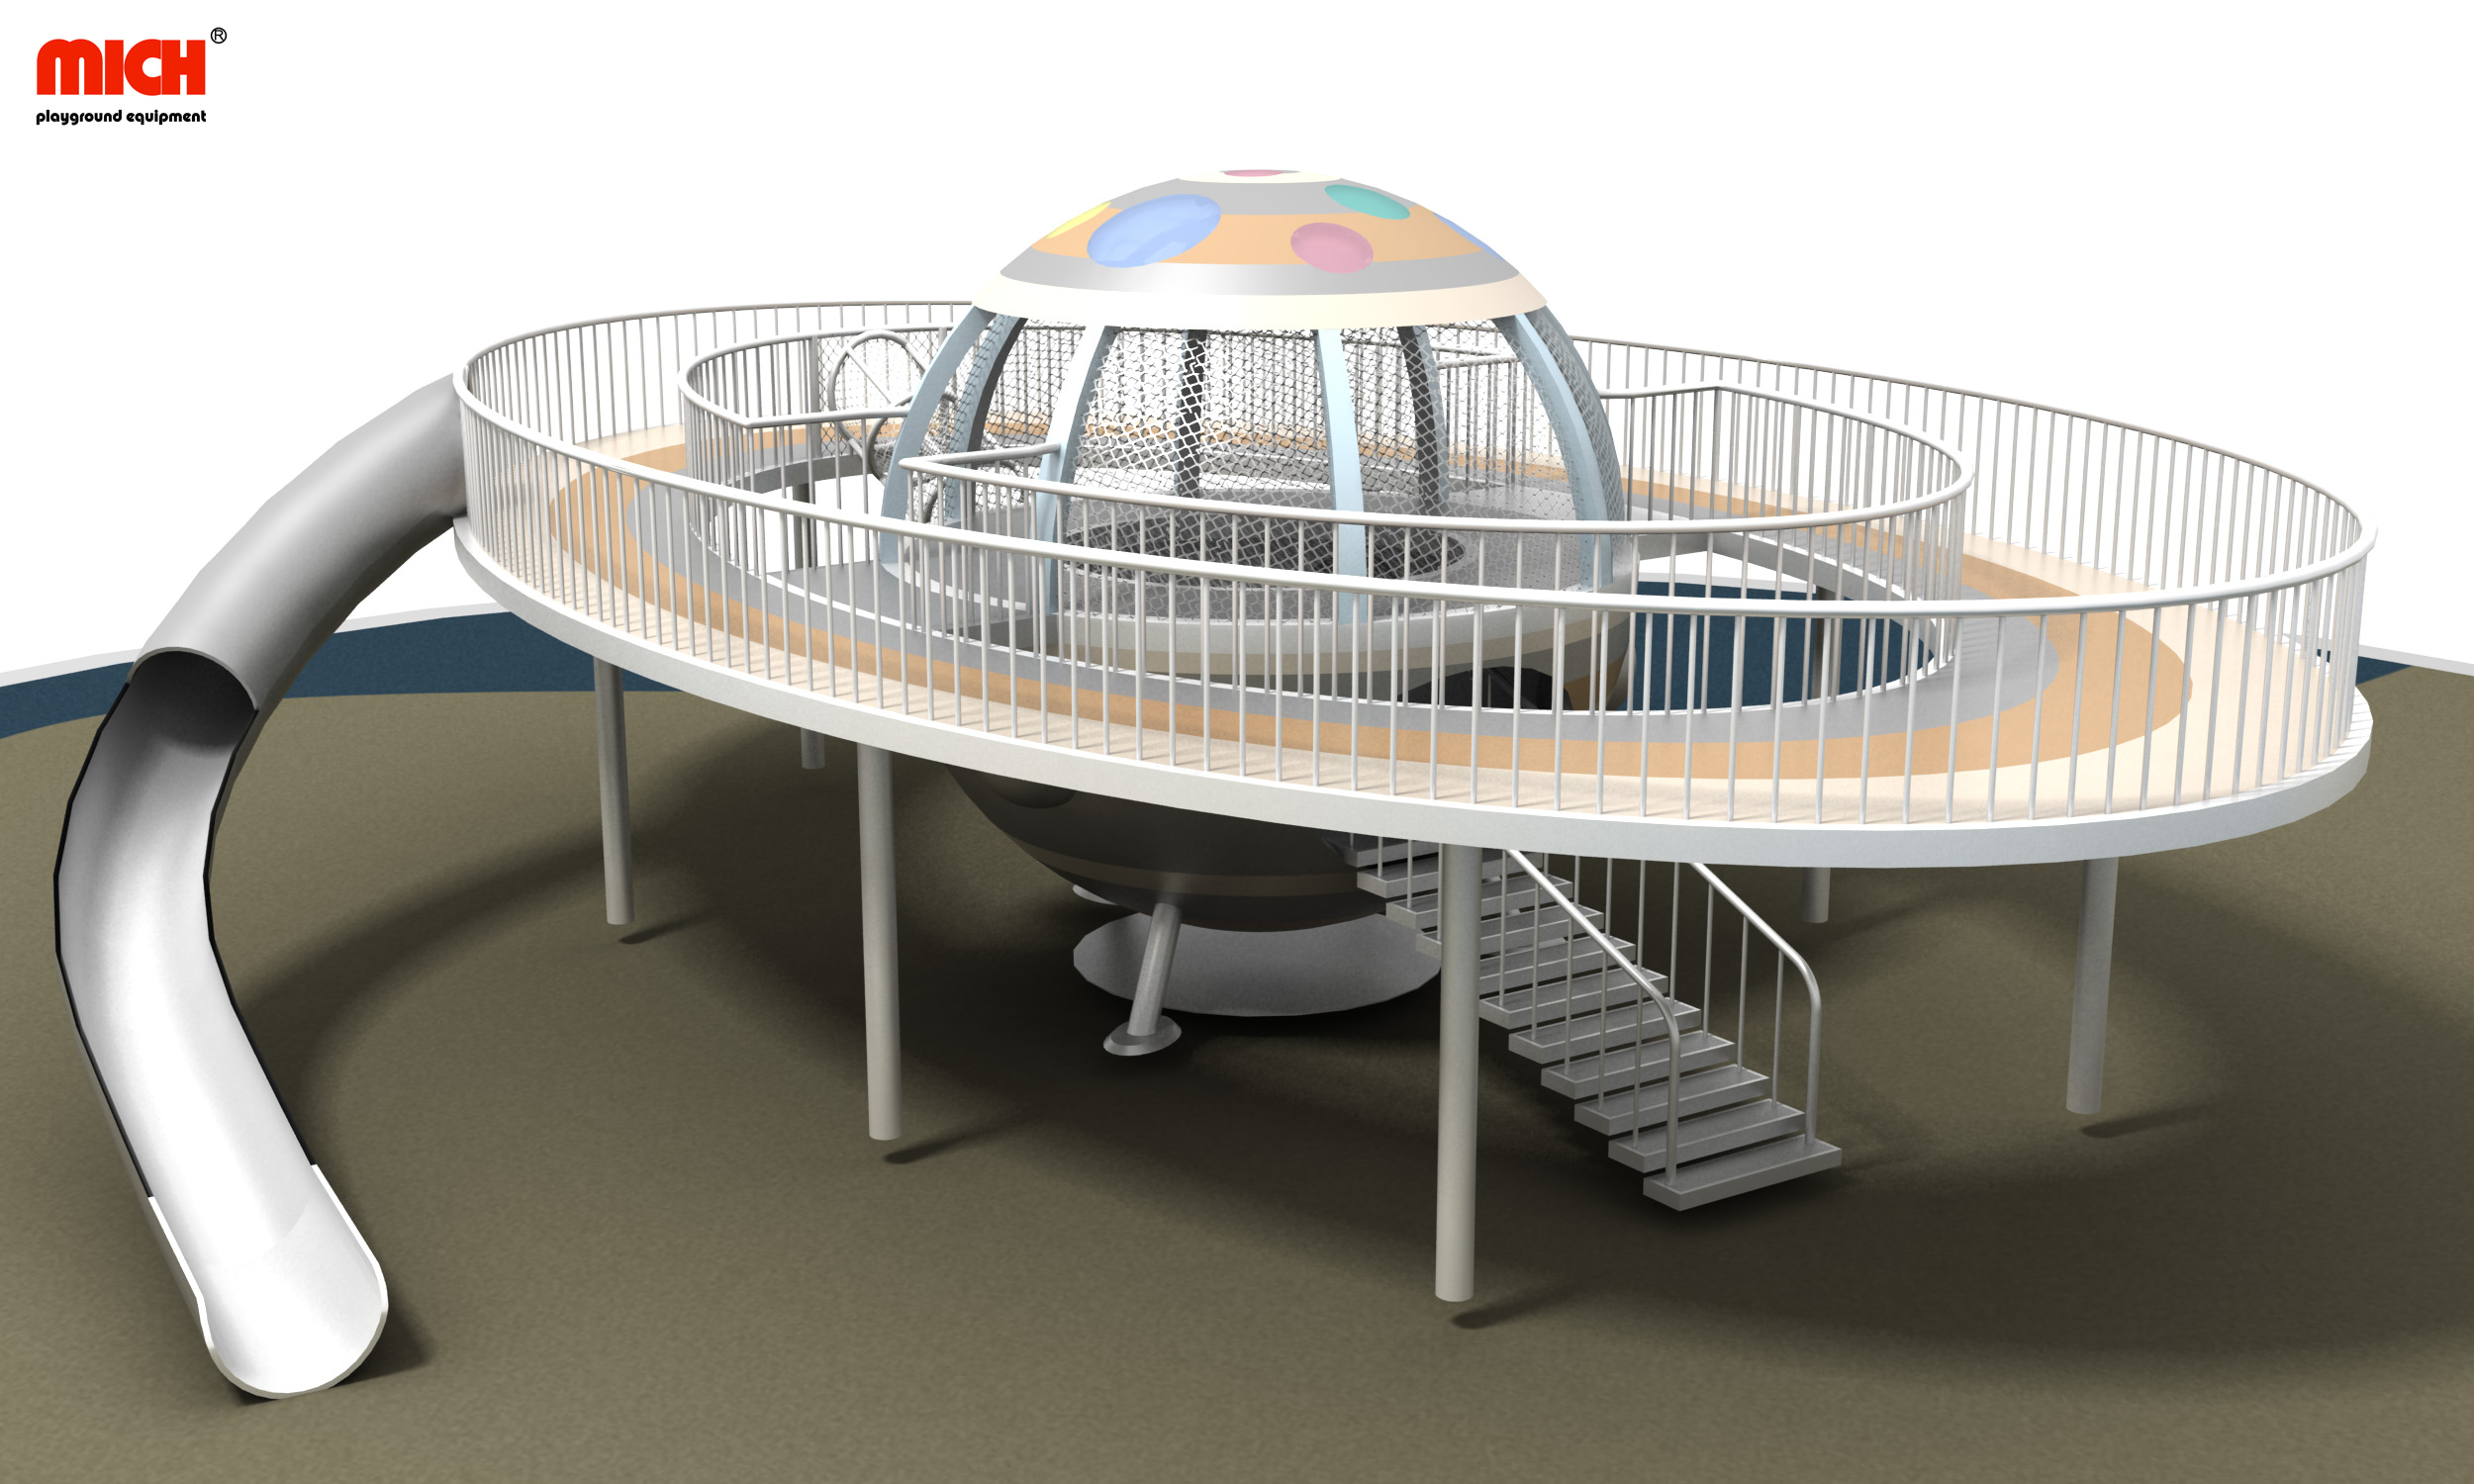 Struktur bermain outdoor bertema ruang angkasa